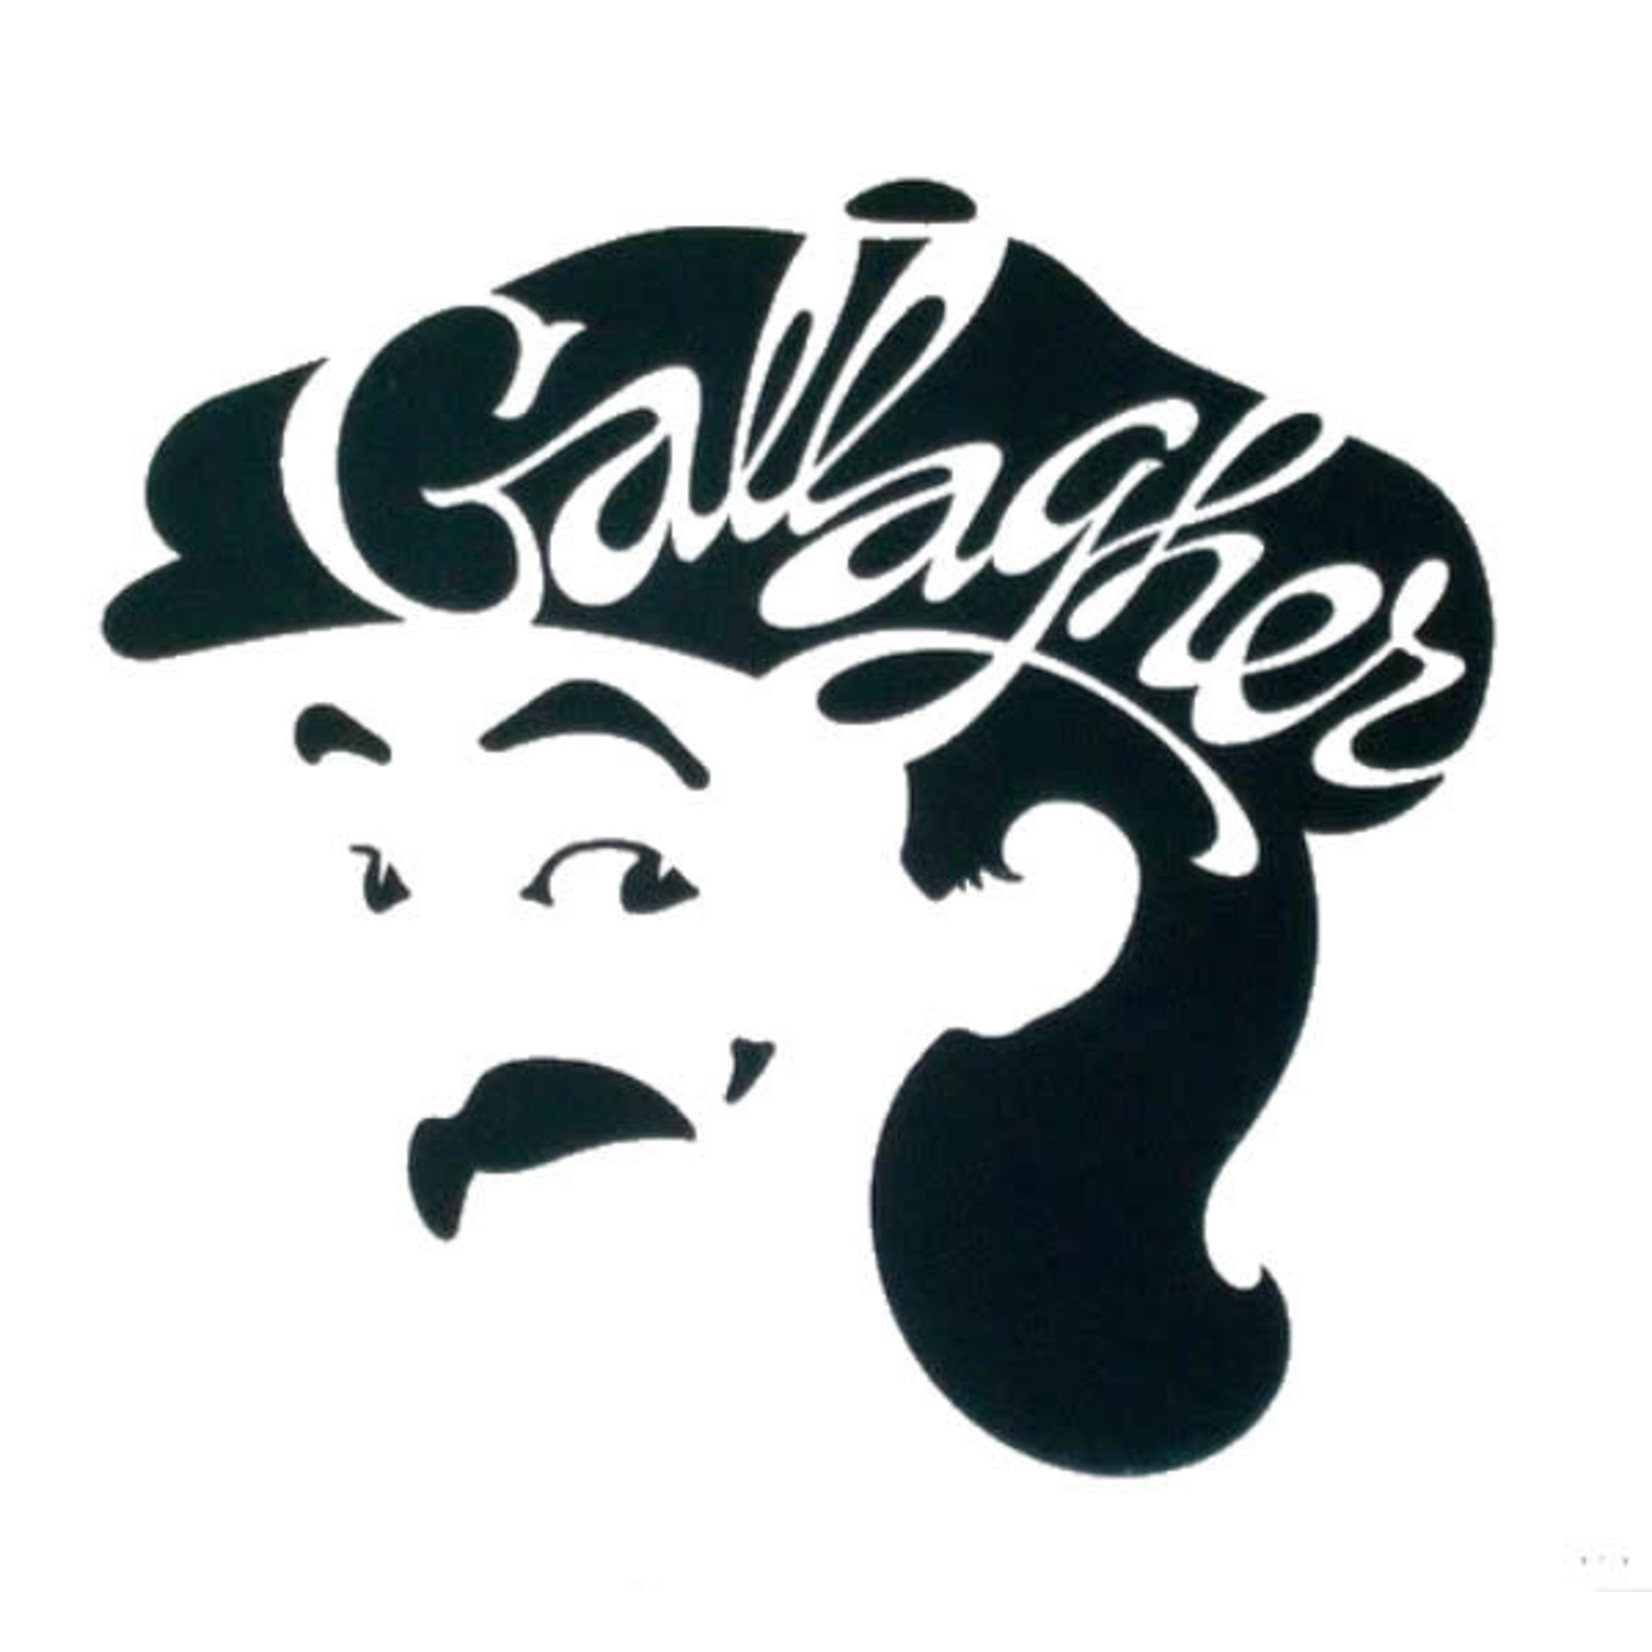 [Vintage] Gallagher - self-titled